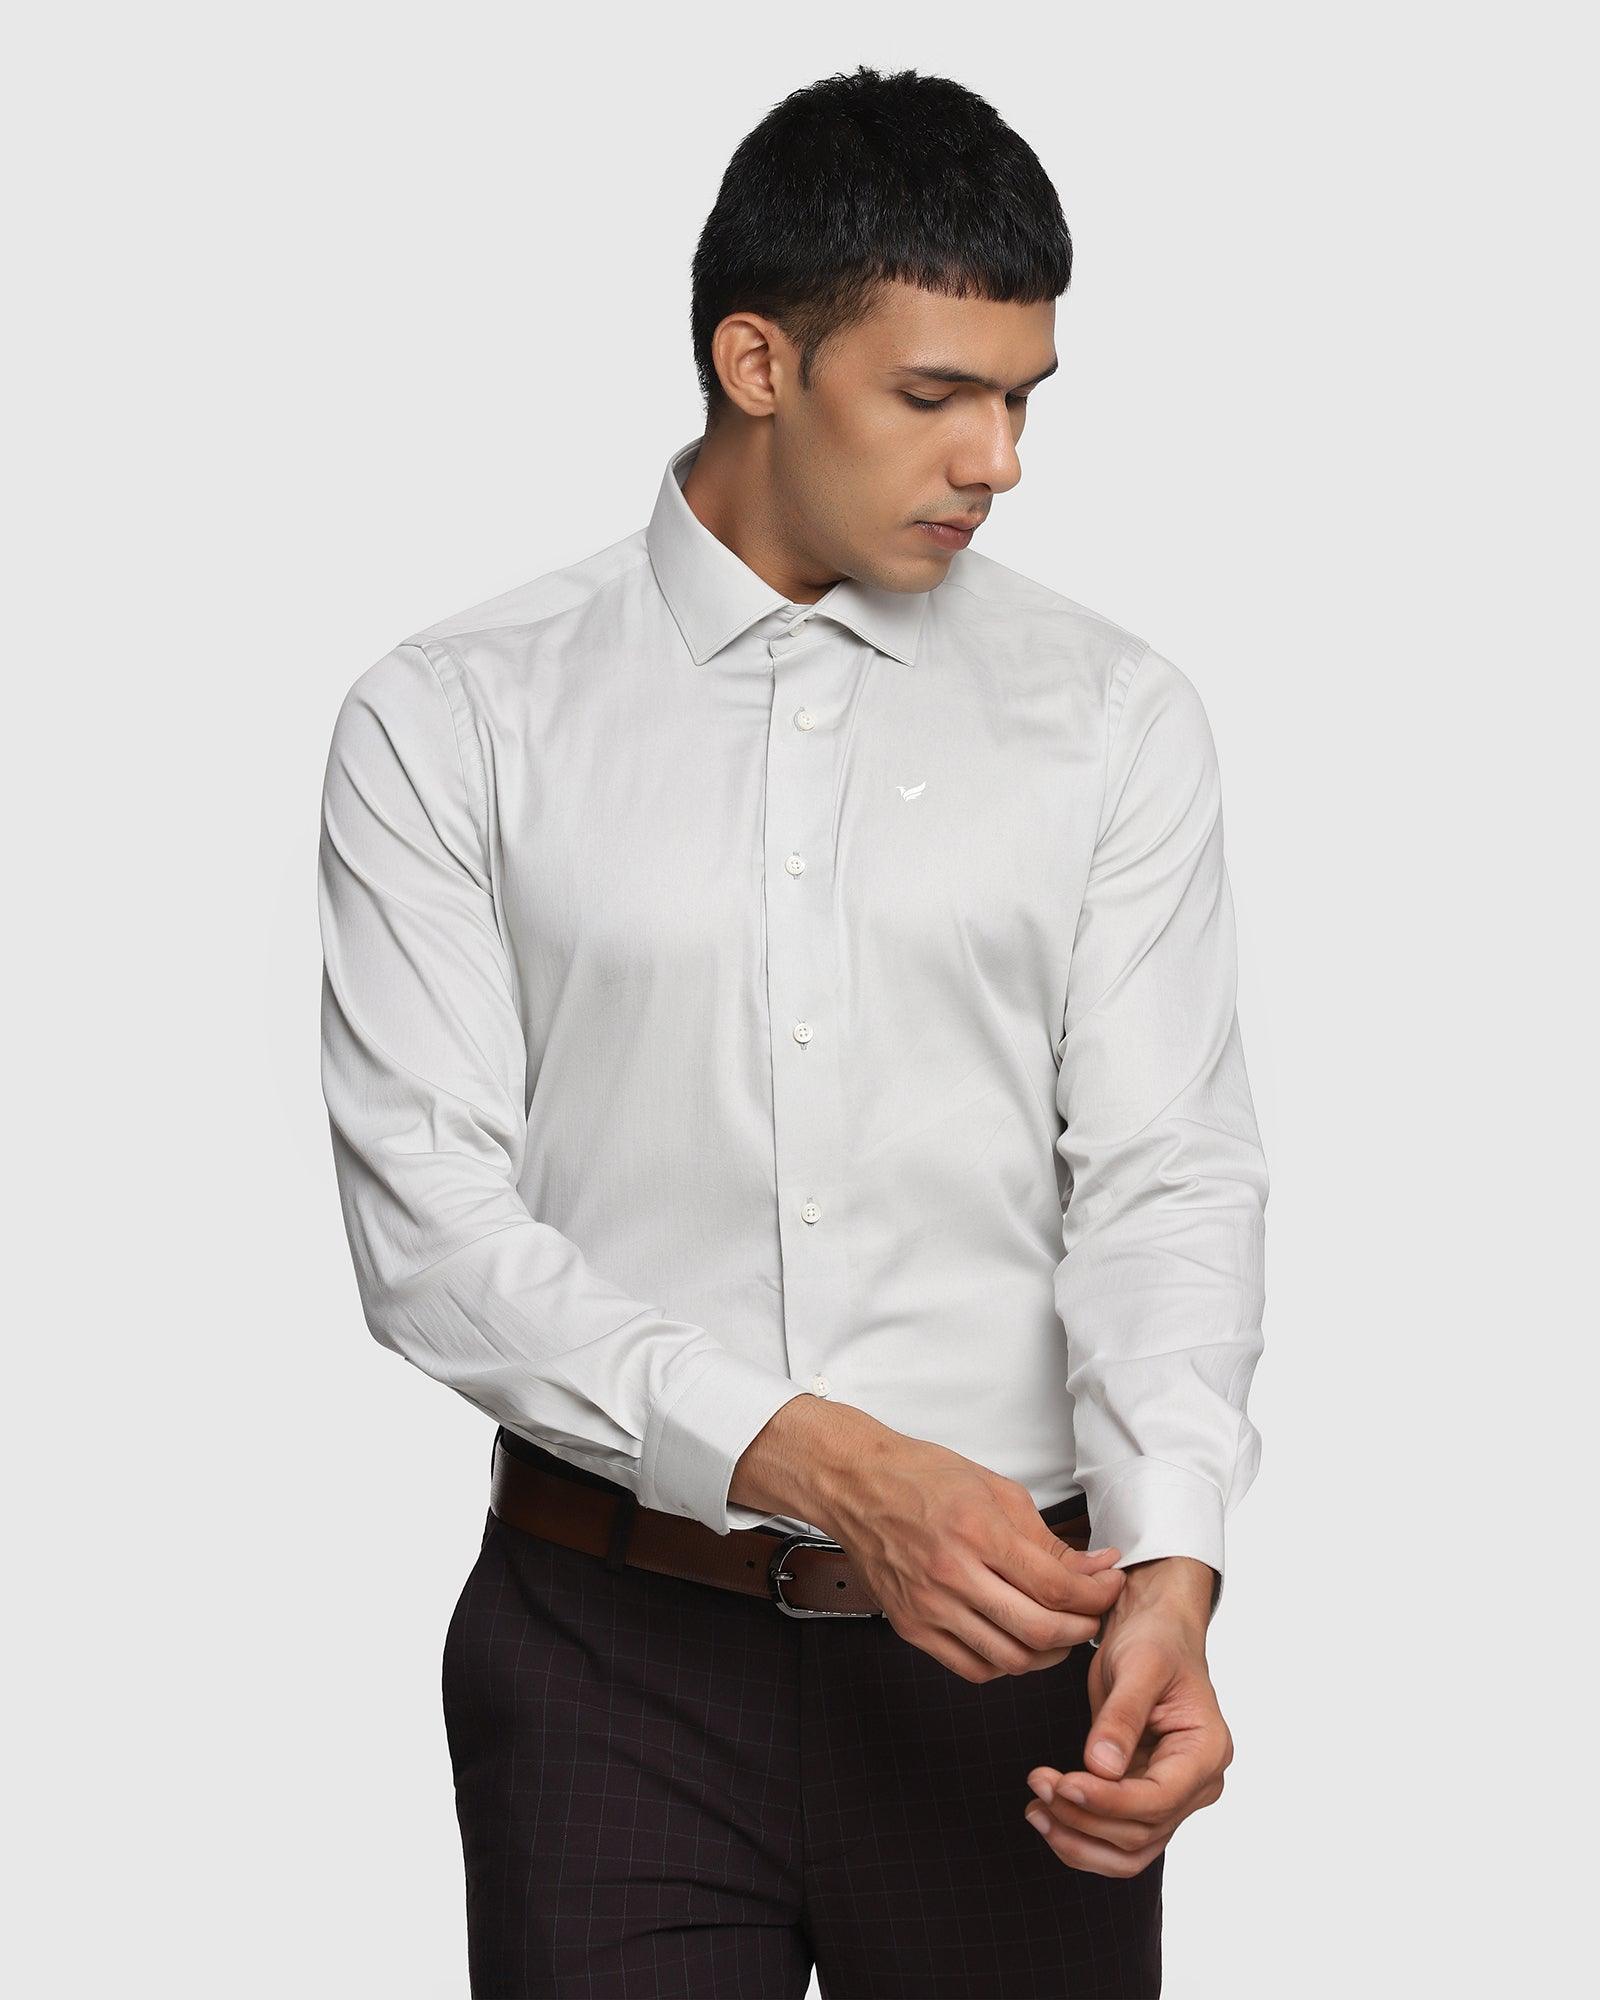 TechPro Formal Grey Solid Shirt - Nitro